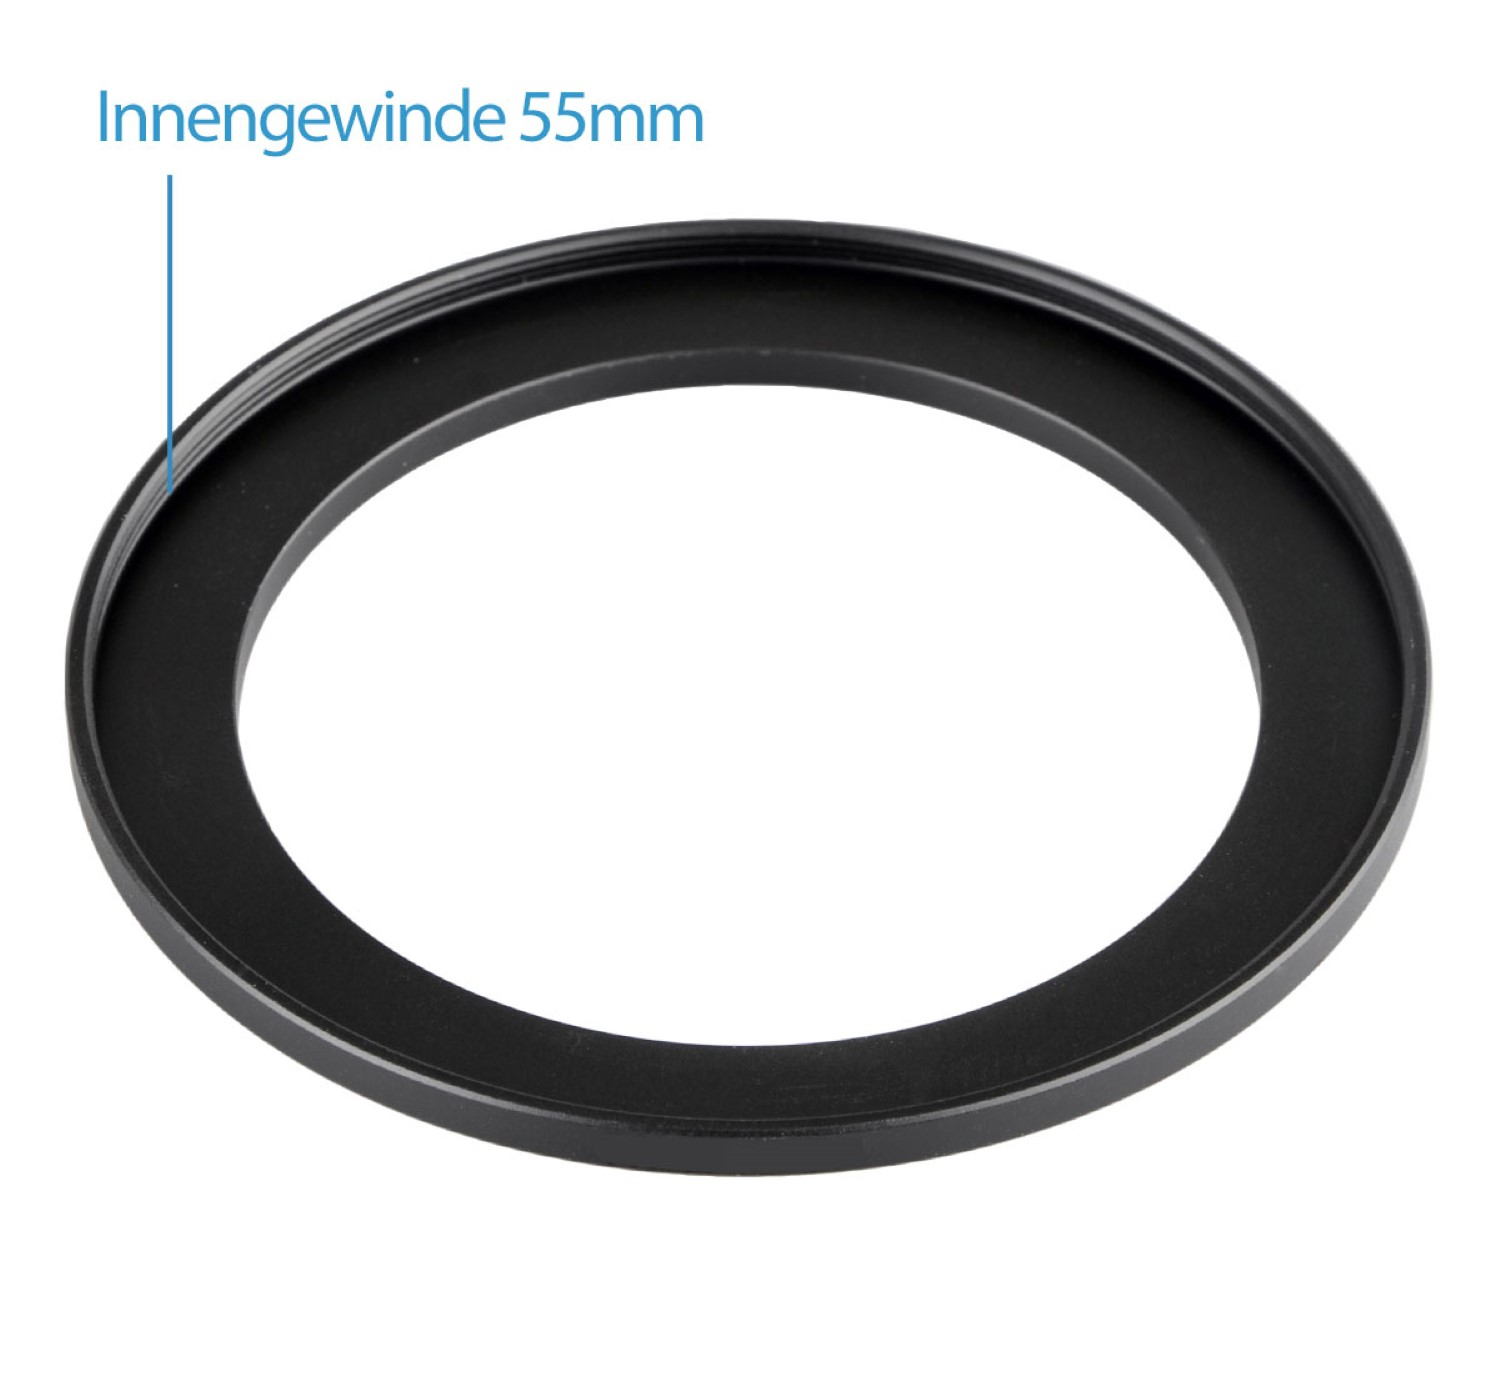 Black, mit Step-Up Filtergewinde für passend Adapter, Ring, Objektive AYEX